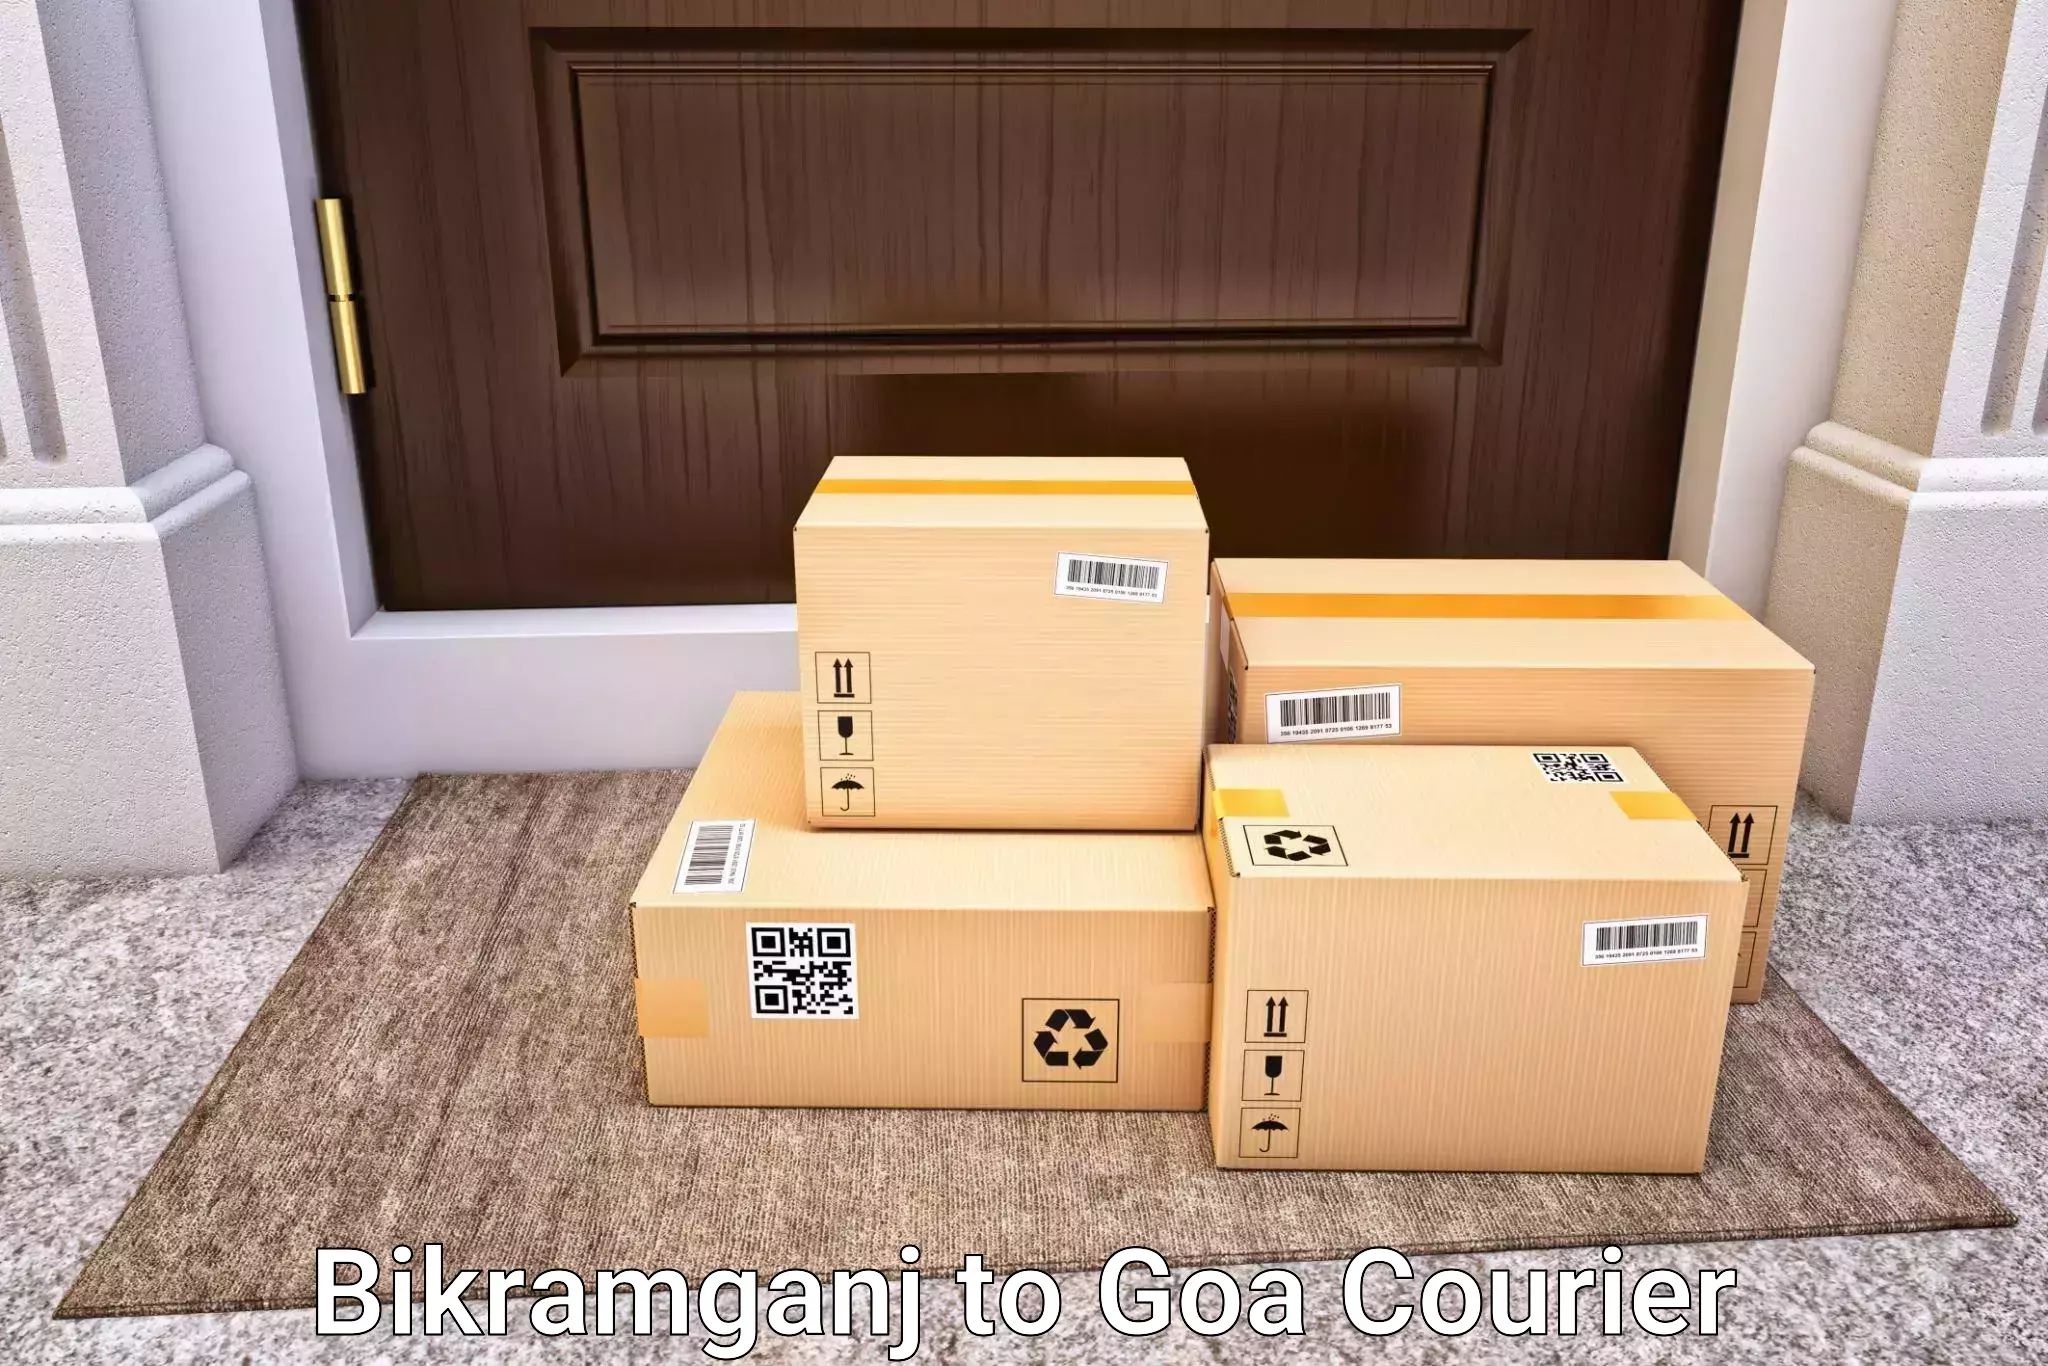 Customized luggage delivery Bikramganj to Goa